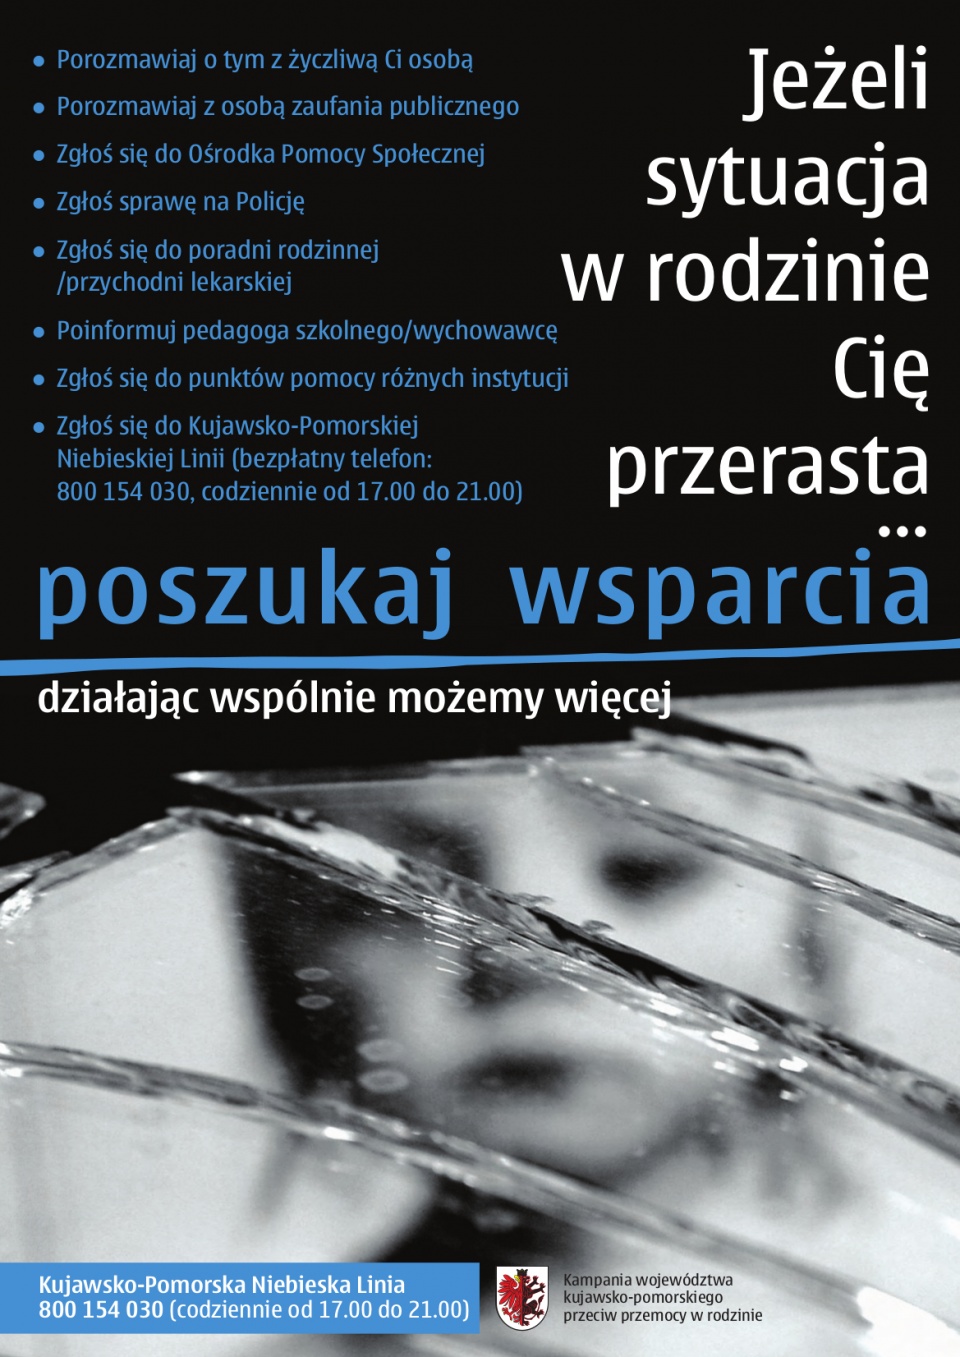 Numer 0 800 154 030 i adres niebieskalinia@kujawsko-pomorskie.pl połączą zainteresowanych z Pogotowiem dla Ofiar Przemocy w Rodzinie